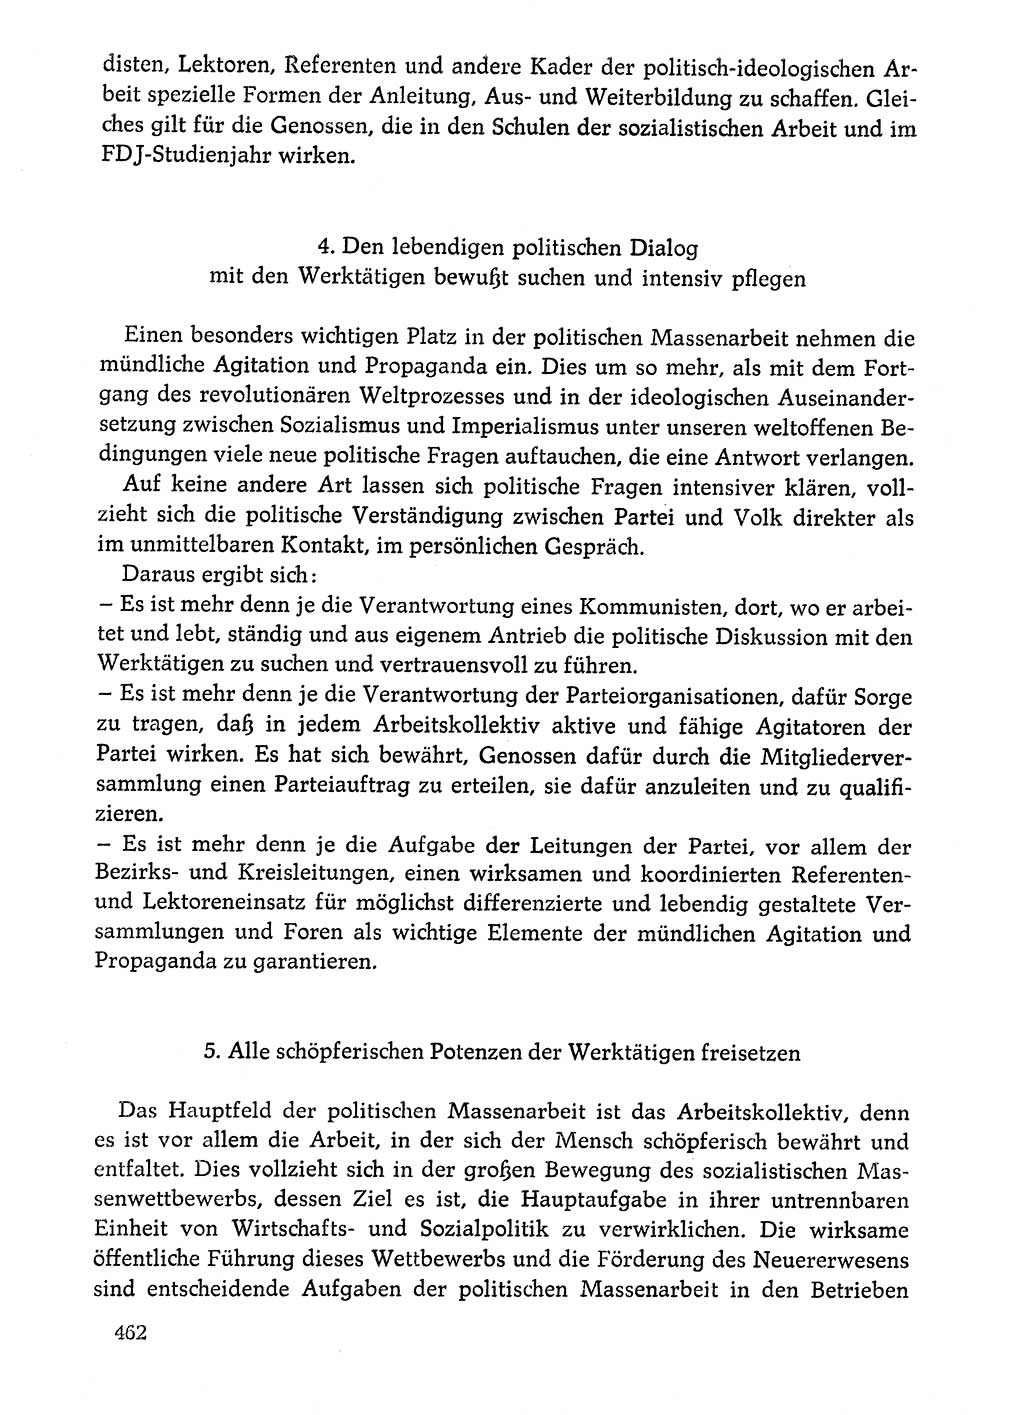 Dokumente der Sozialistischen Einheitspartei Deutschlands (SED) [Deutsche Demokratische Republik (DDR)] 1976-1977, Seite 462 (Dok. SED DDR 1976-1977, S. 462)